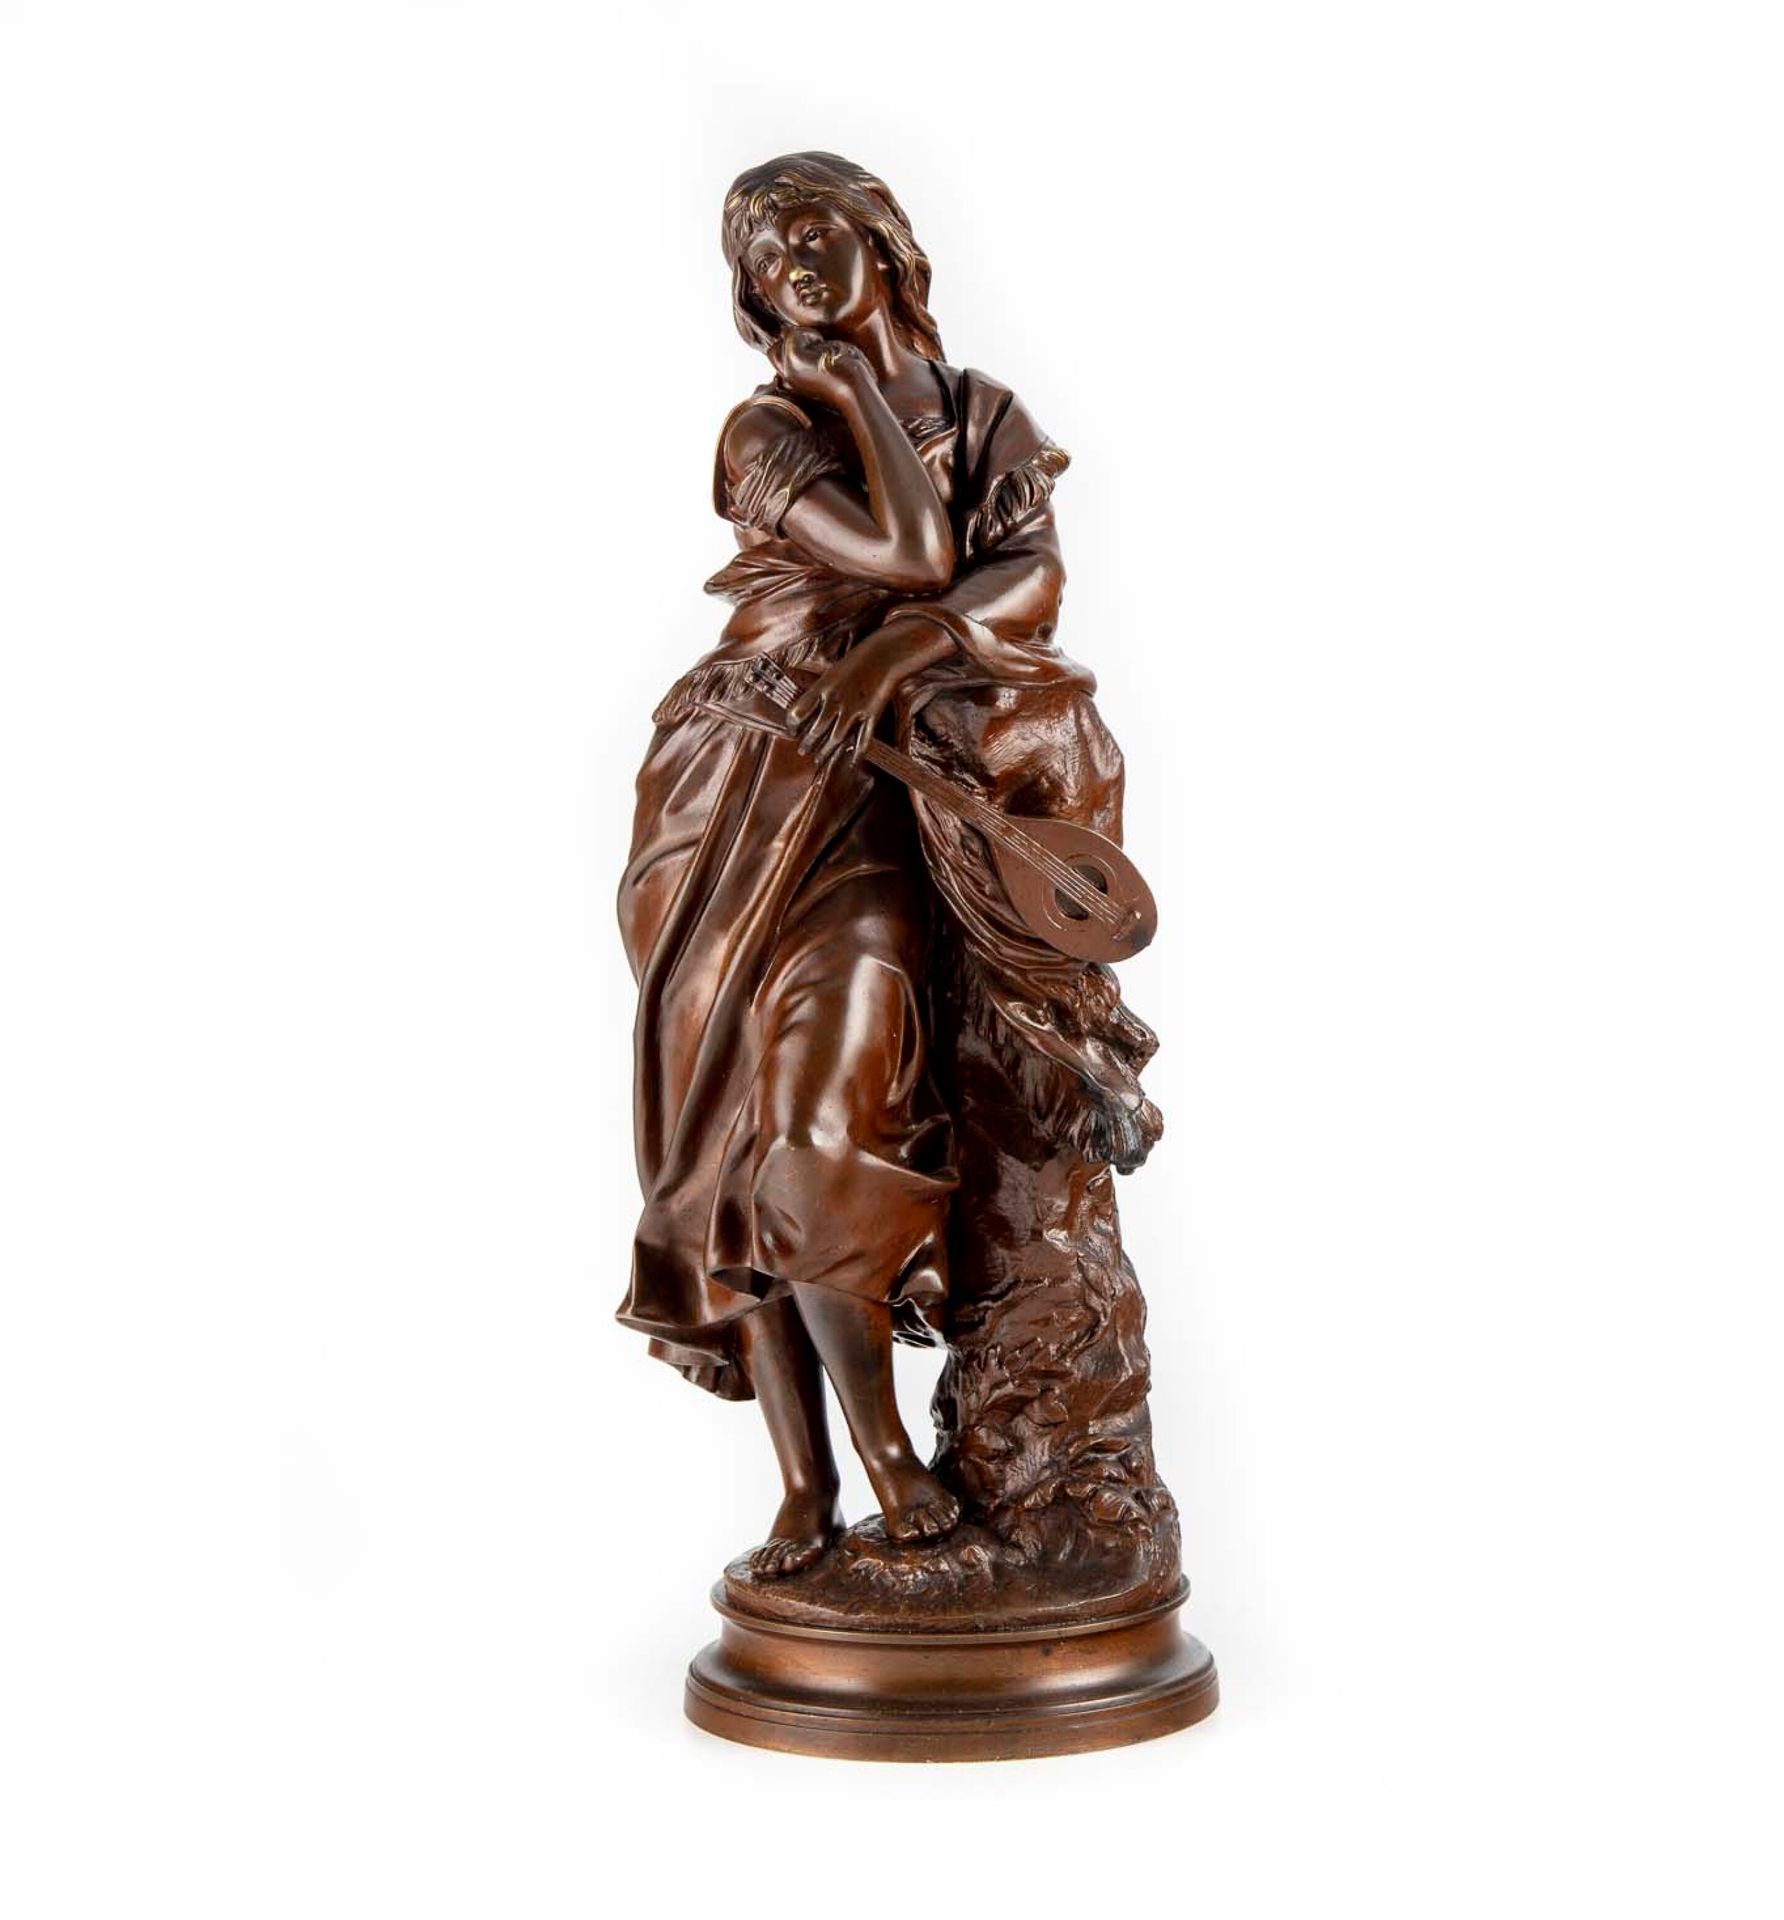 GAUDEZ Adrien Etienne GAUDEZ (1845-1902)

Mignon

Skulptur aus patinierter Bronz&hellip;